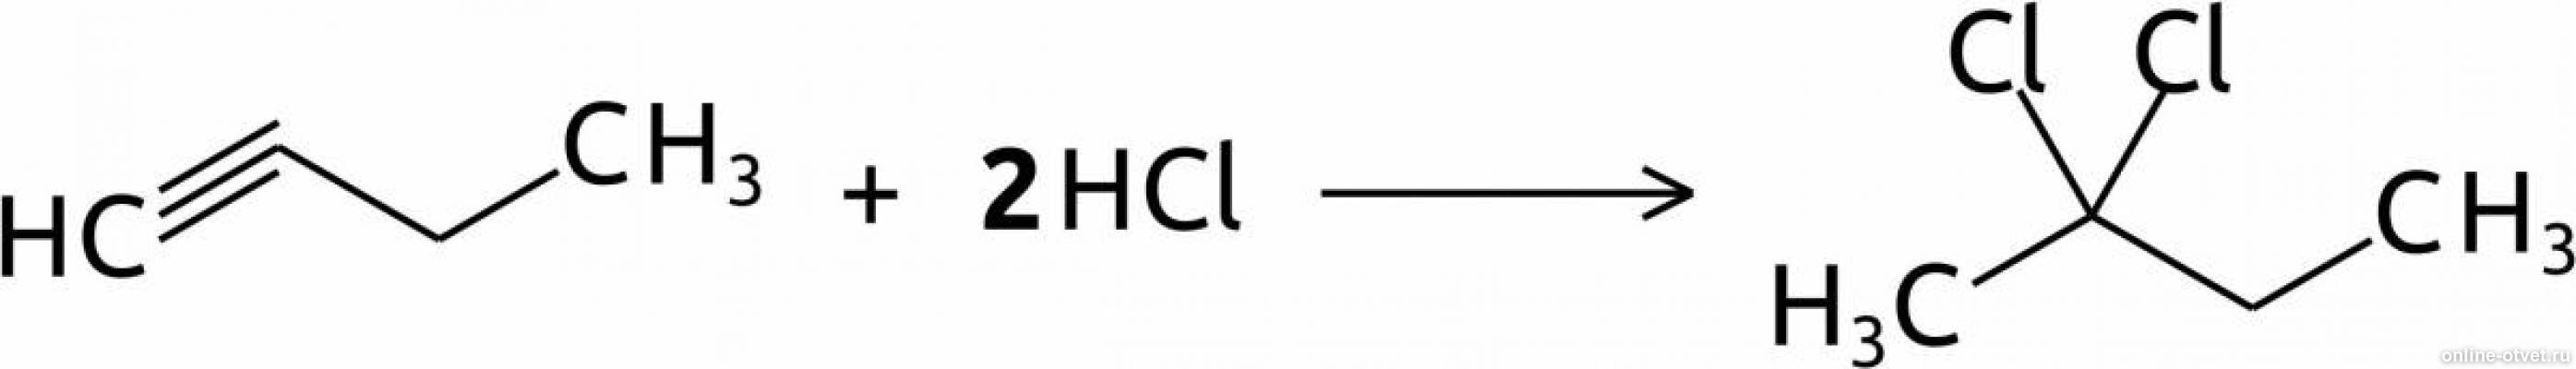 Бутин 2 продукт реакции. Бутин-1 +2hcl. Бутин HCL. Бутин 2 2hcl. Бутина-1 с HCL.